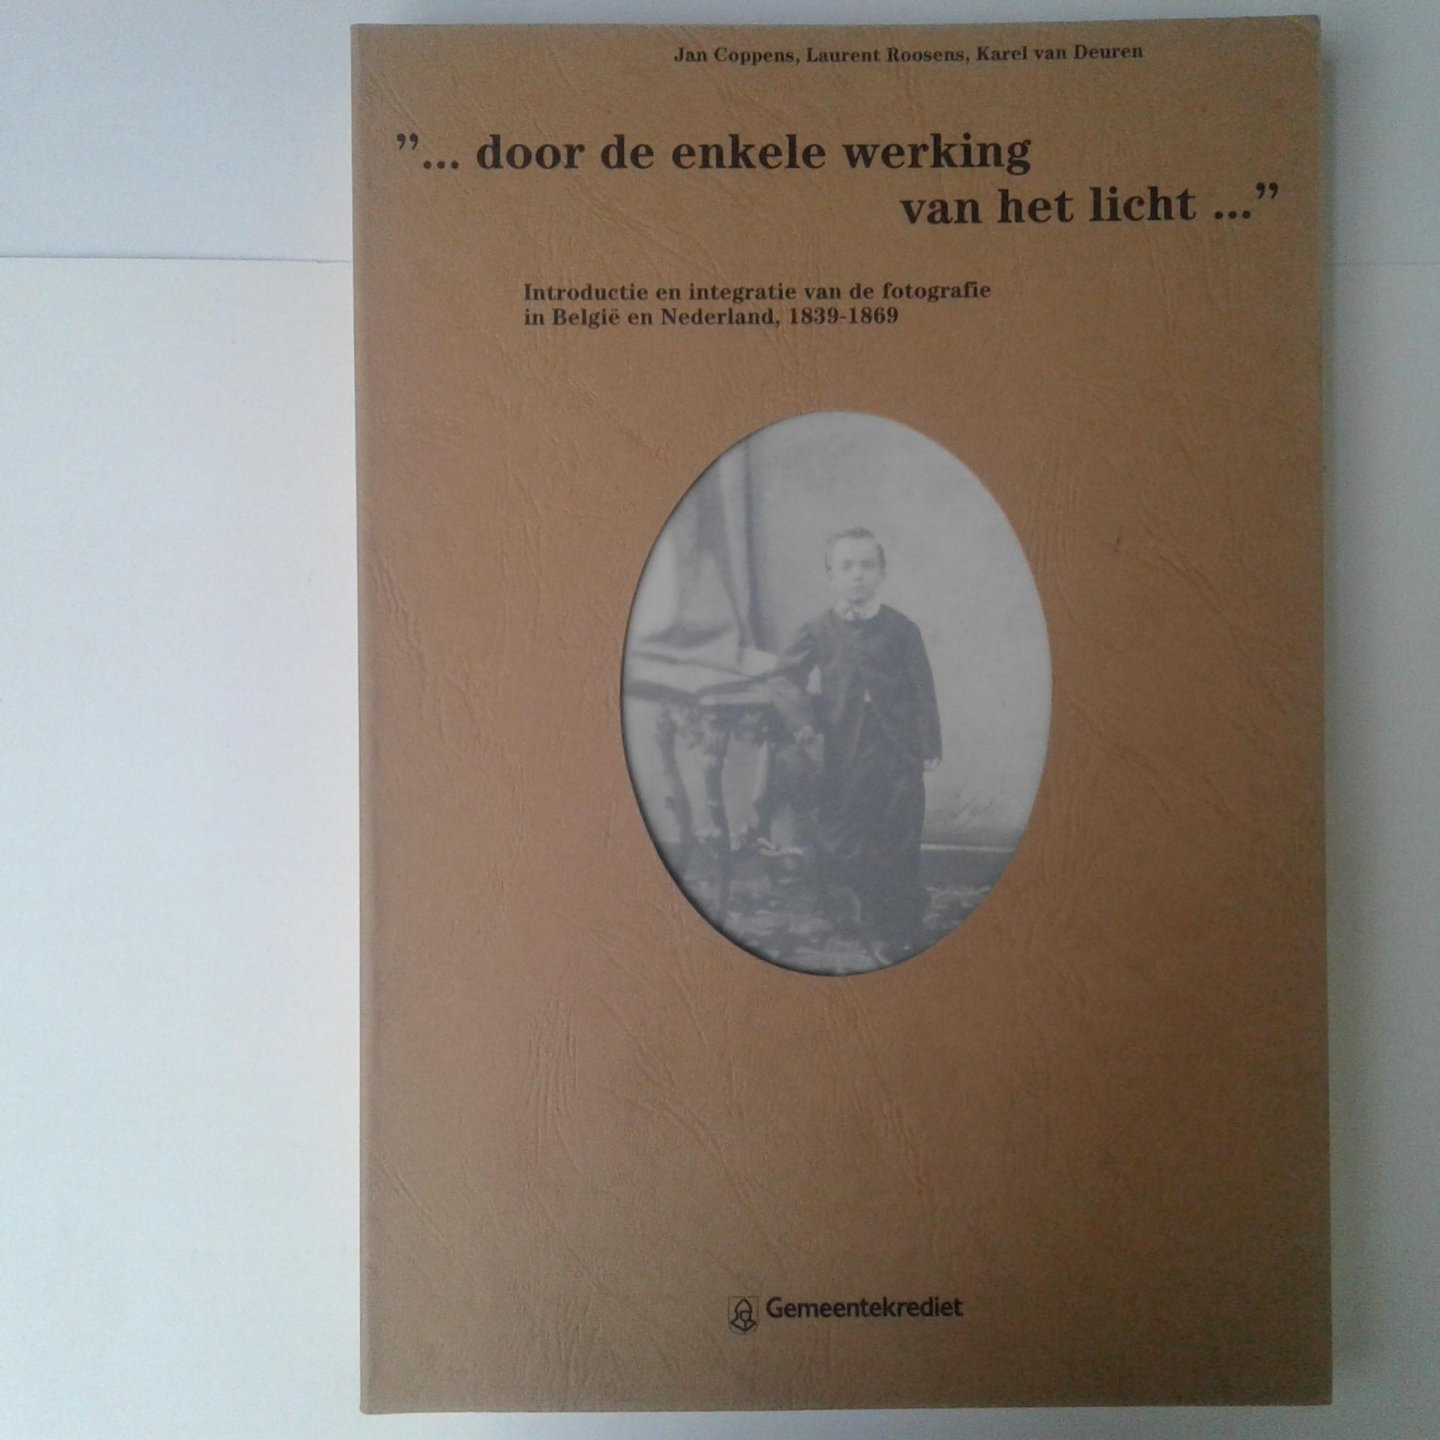 Coppens, Jan ; Laurent Roosens, Karelvan Deuren - Introductie en integrate van de fotografie in Belgie en Nederland, 1839-1869